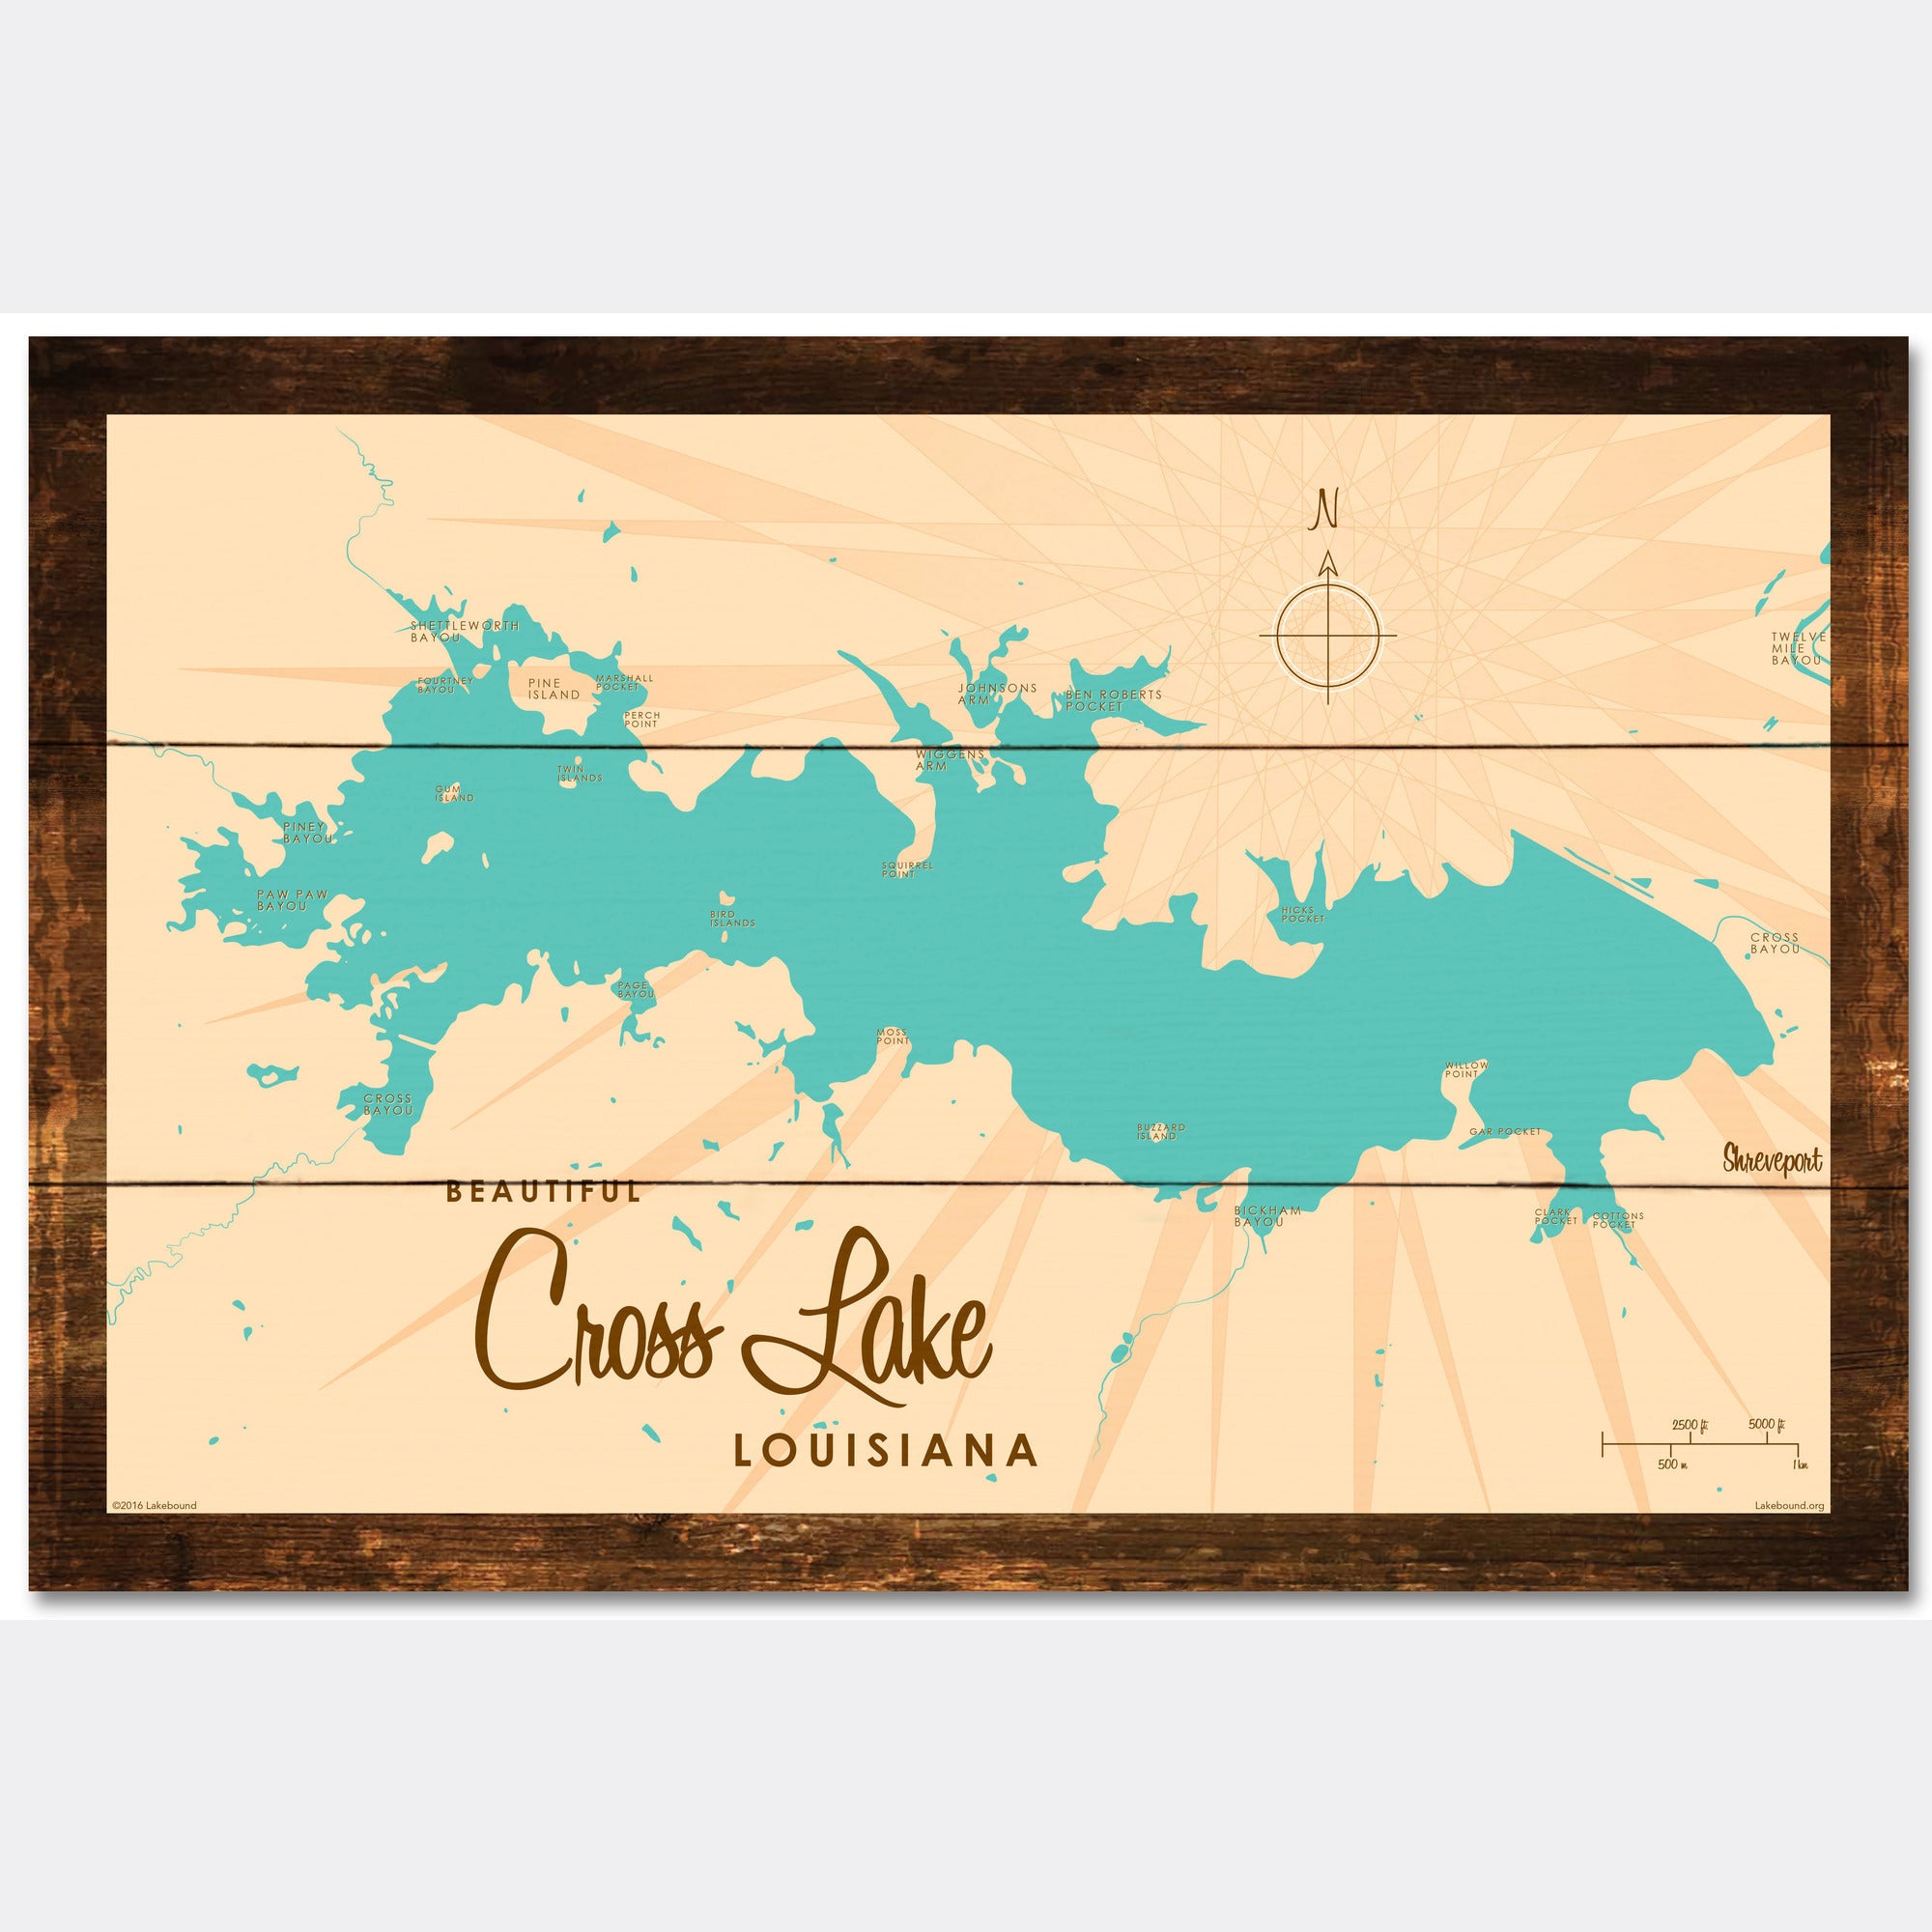 Cross Lake Louisiana, Rustic Wood Sign Map Art